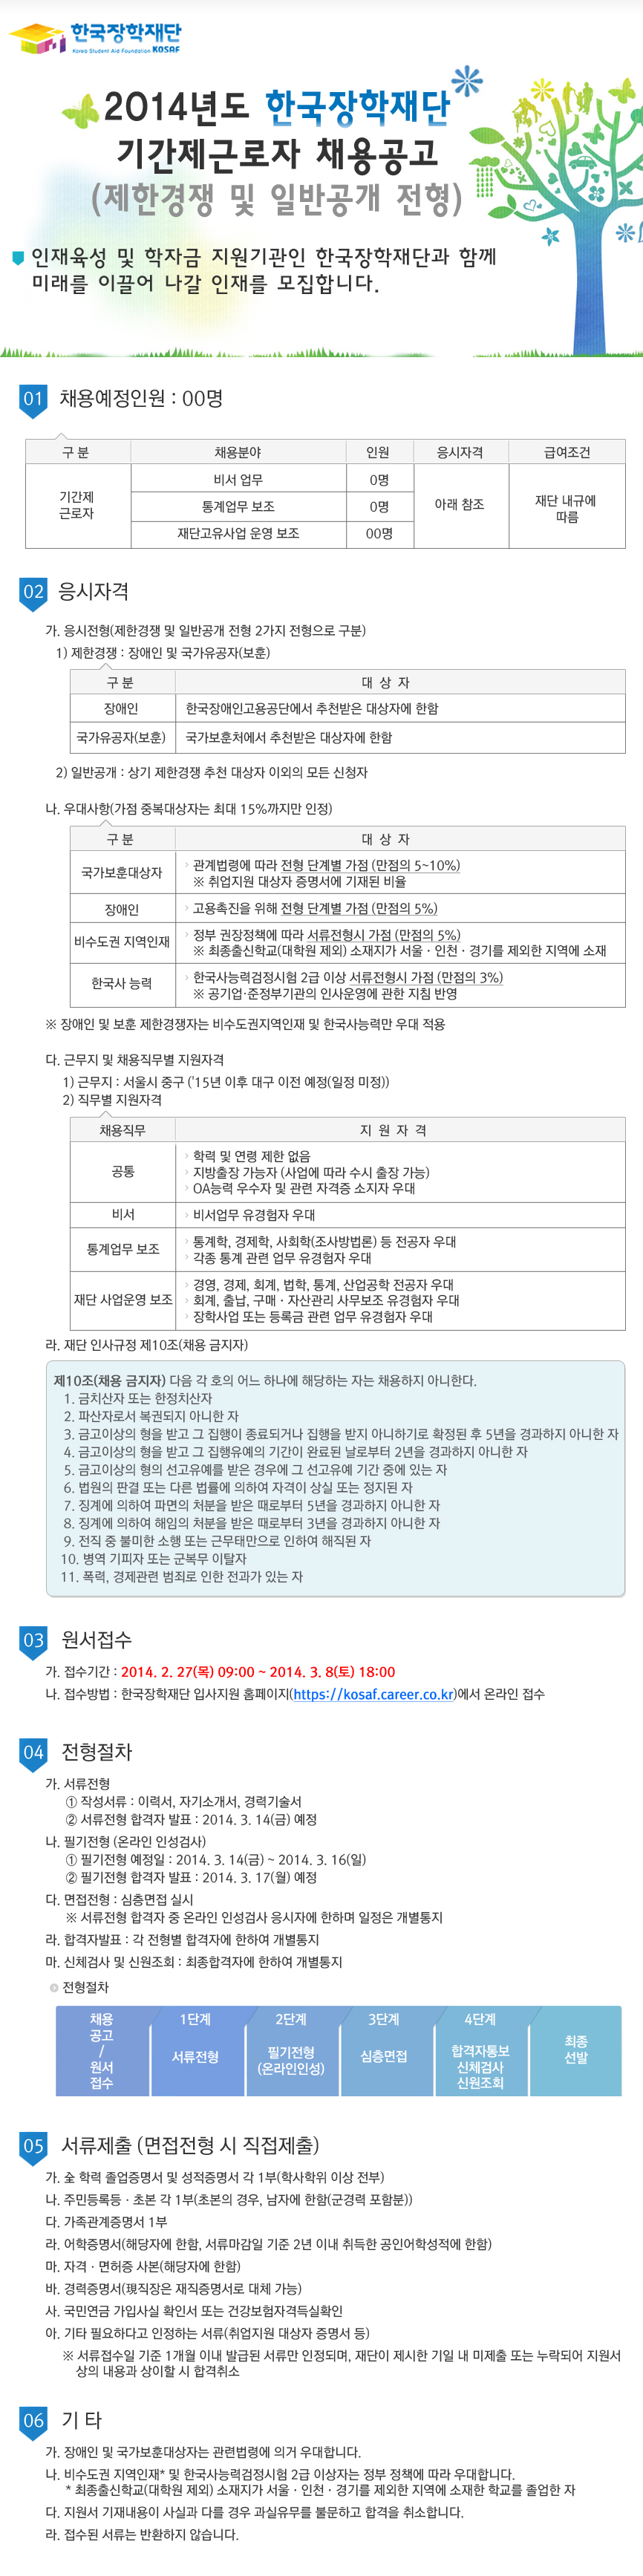 2014년도 한국장학재단 기간제근로자 채용공고[제한경쟁 및 일반공개 전형]_자세한 내용은 아래와 같습니다.